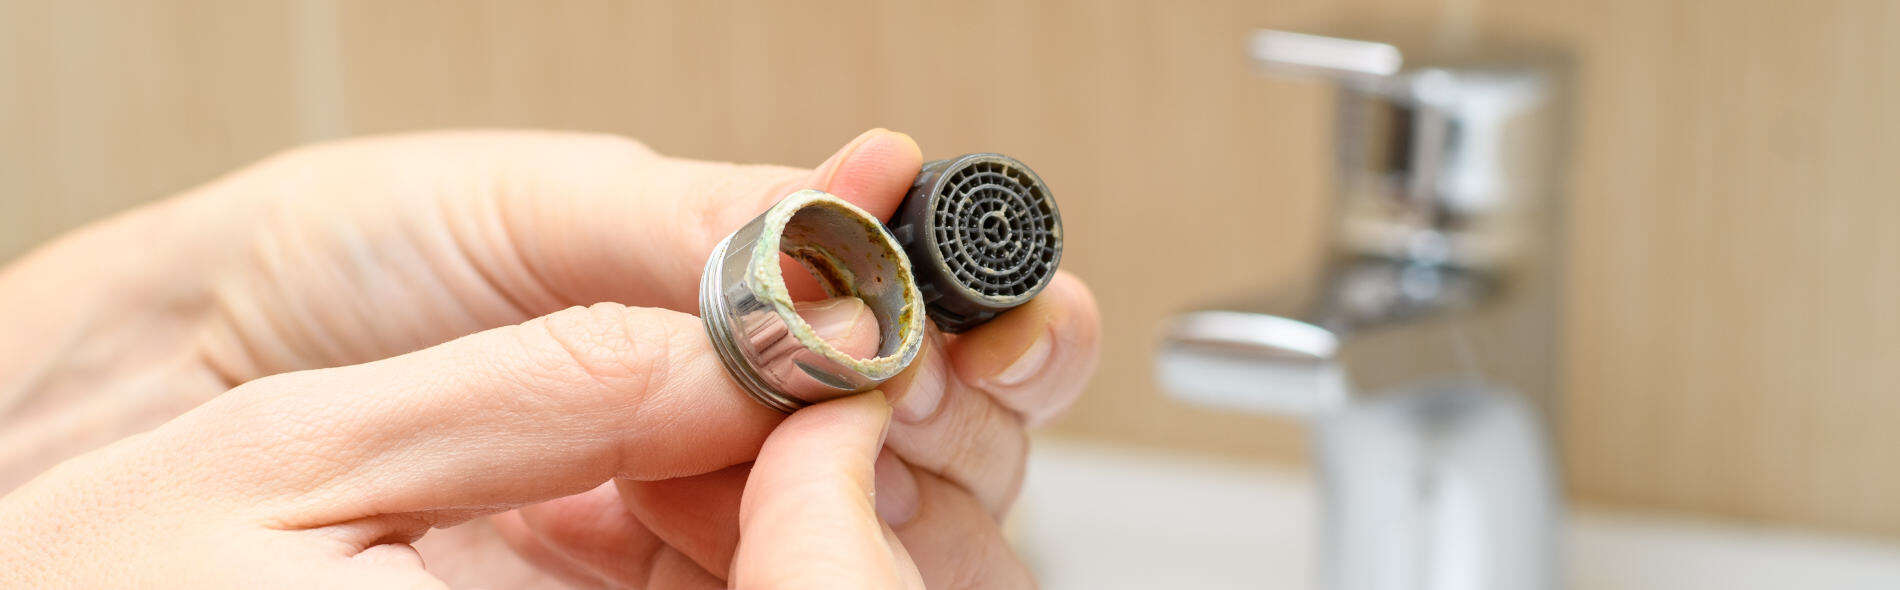 Come pulire il filtro del rubinetto dal calcare con 3 rimedi naturali